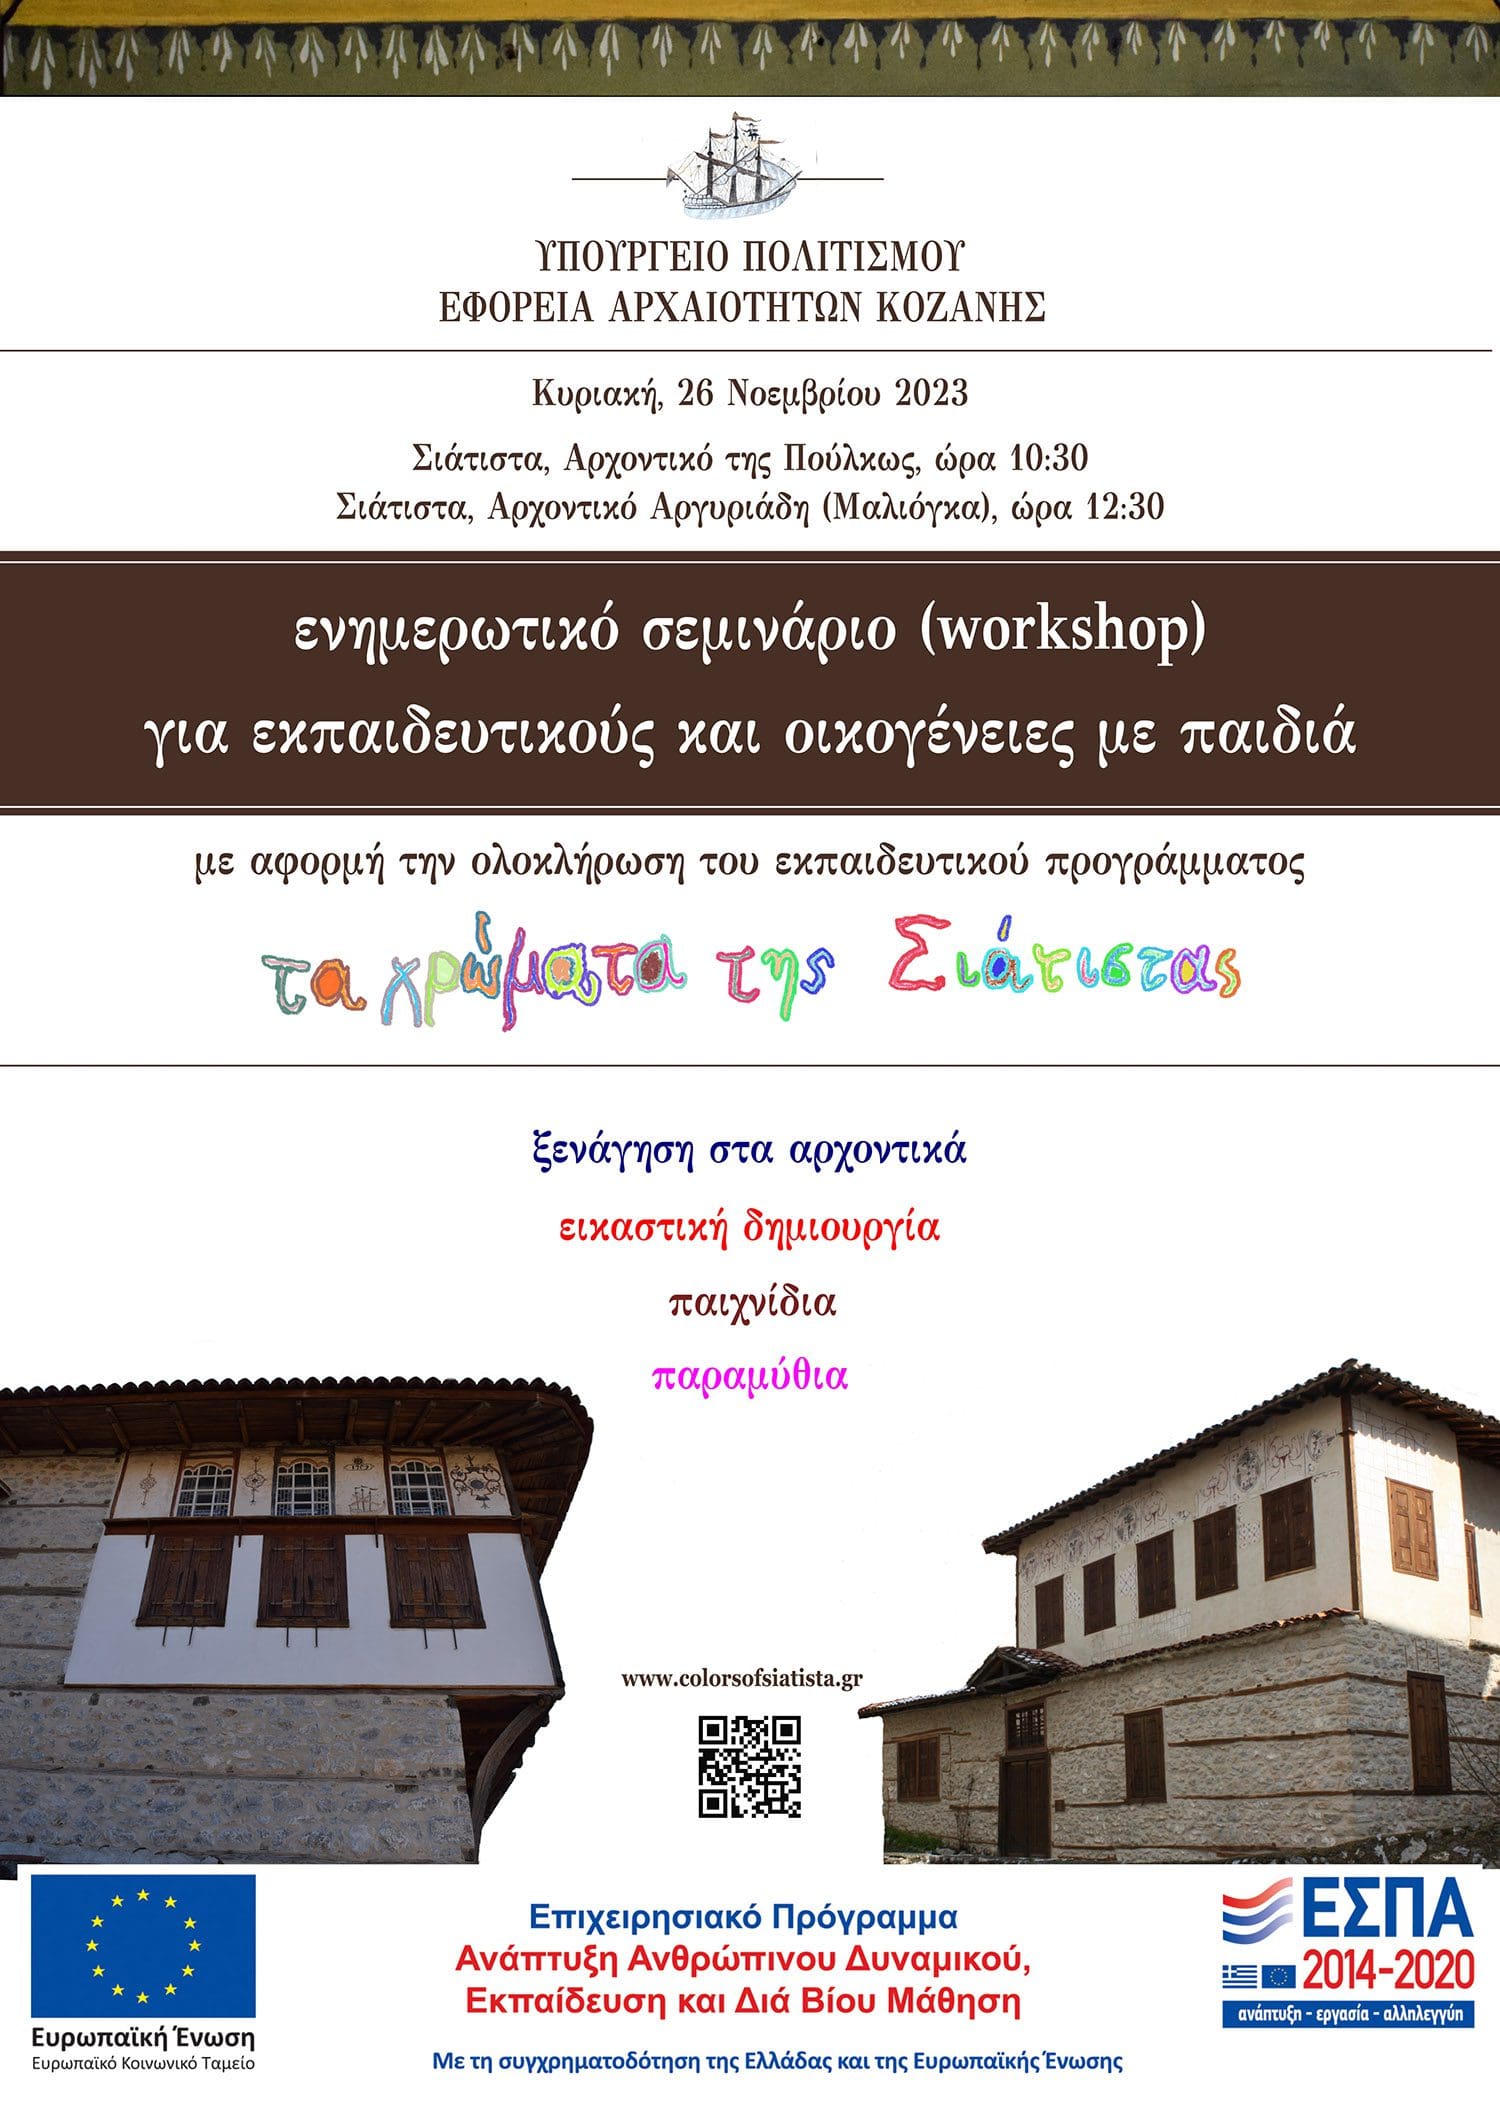 Εφορεία Αρχαιοτήτων Κοζάνης : Ενημερωτικό σεμινάριο (workshop)